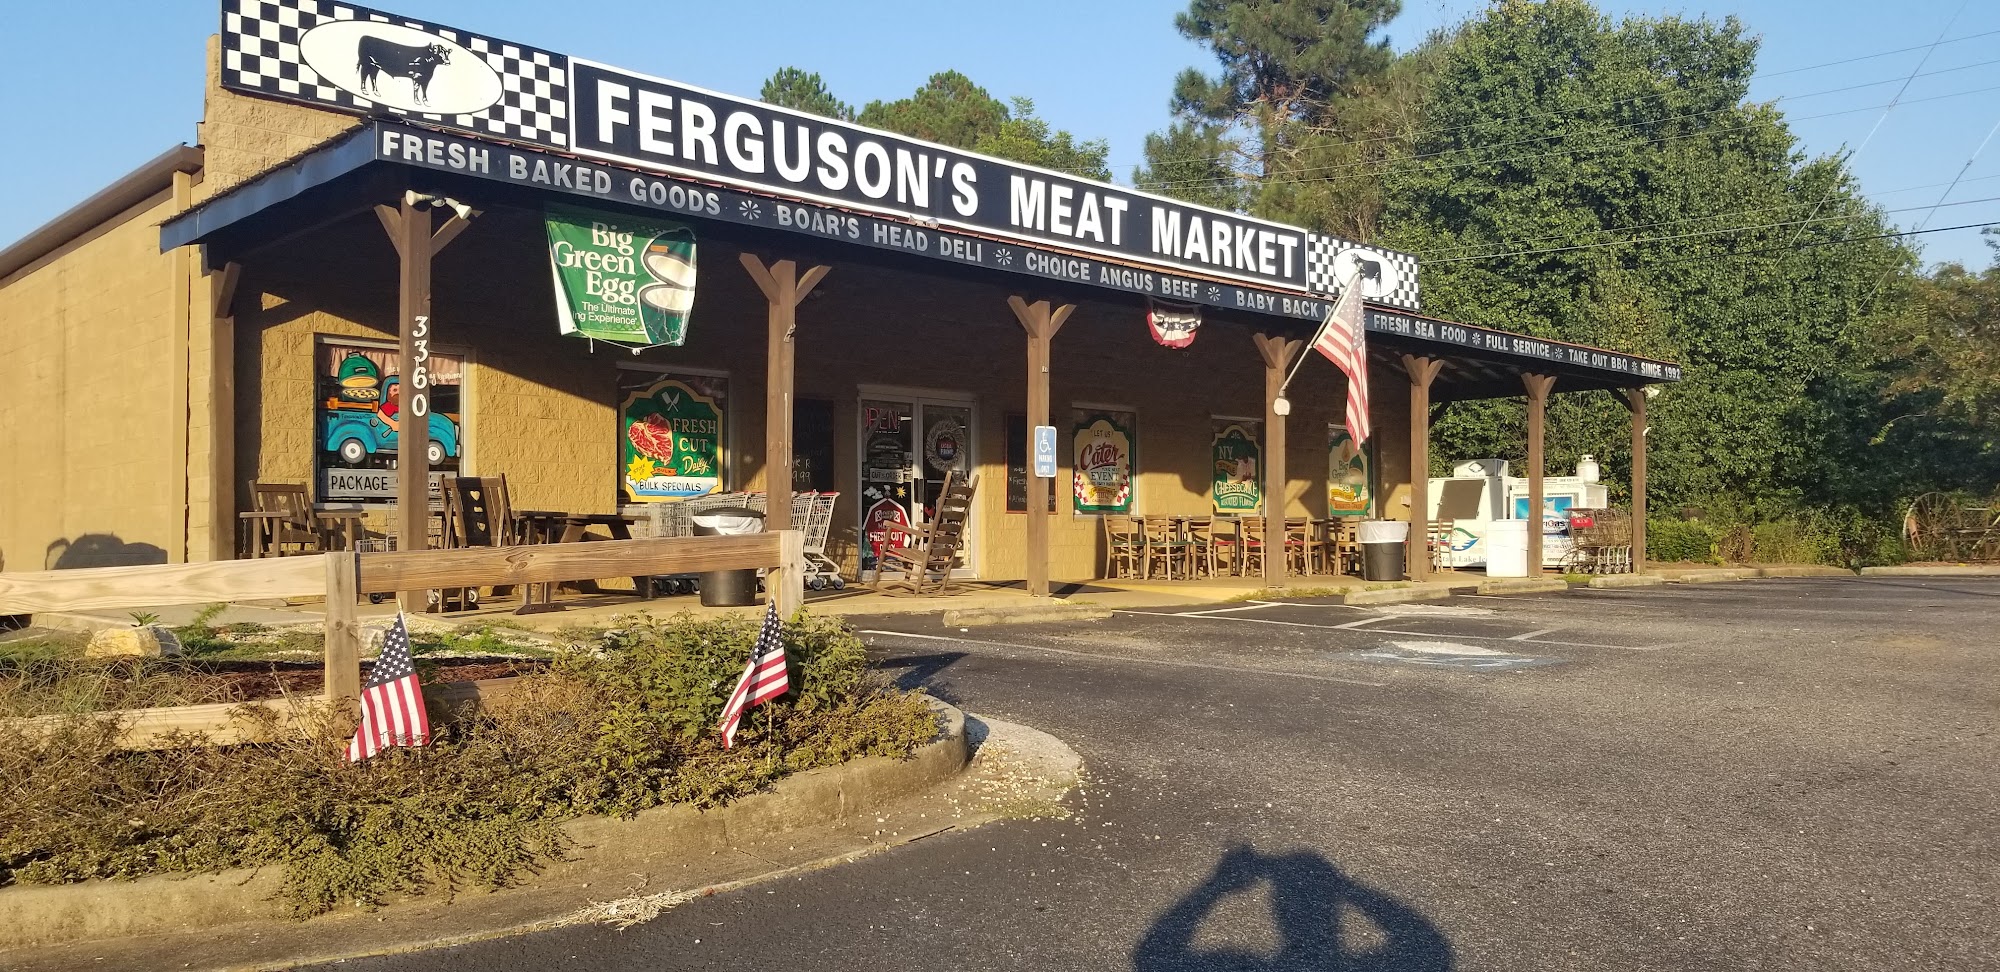 Ferguson's Meat Market